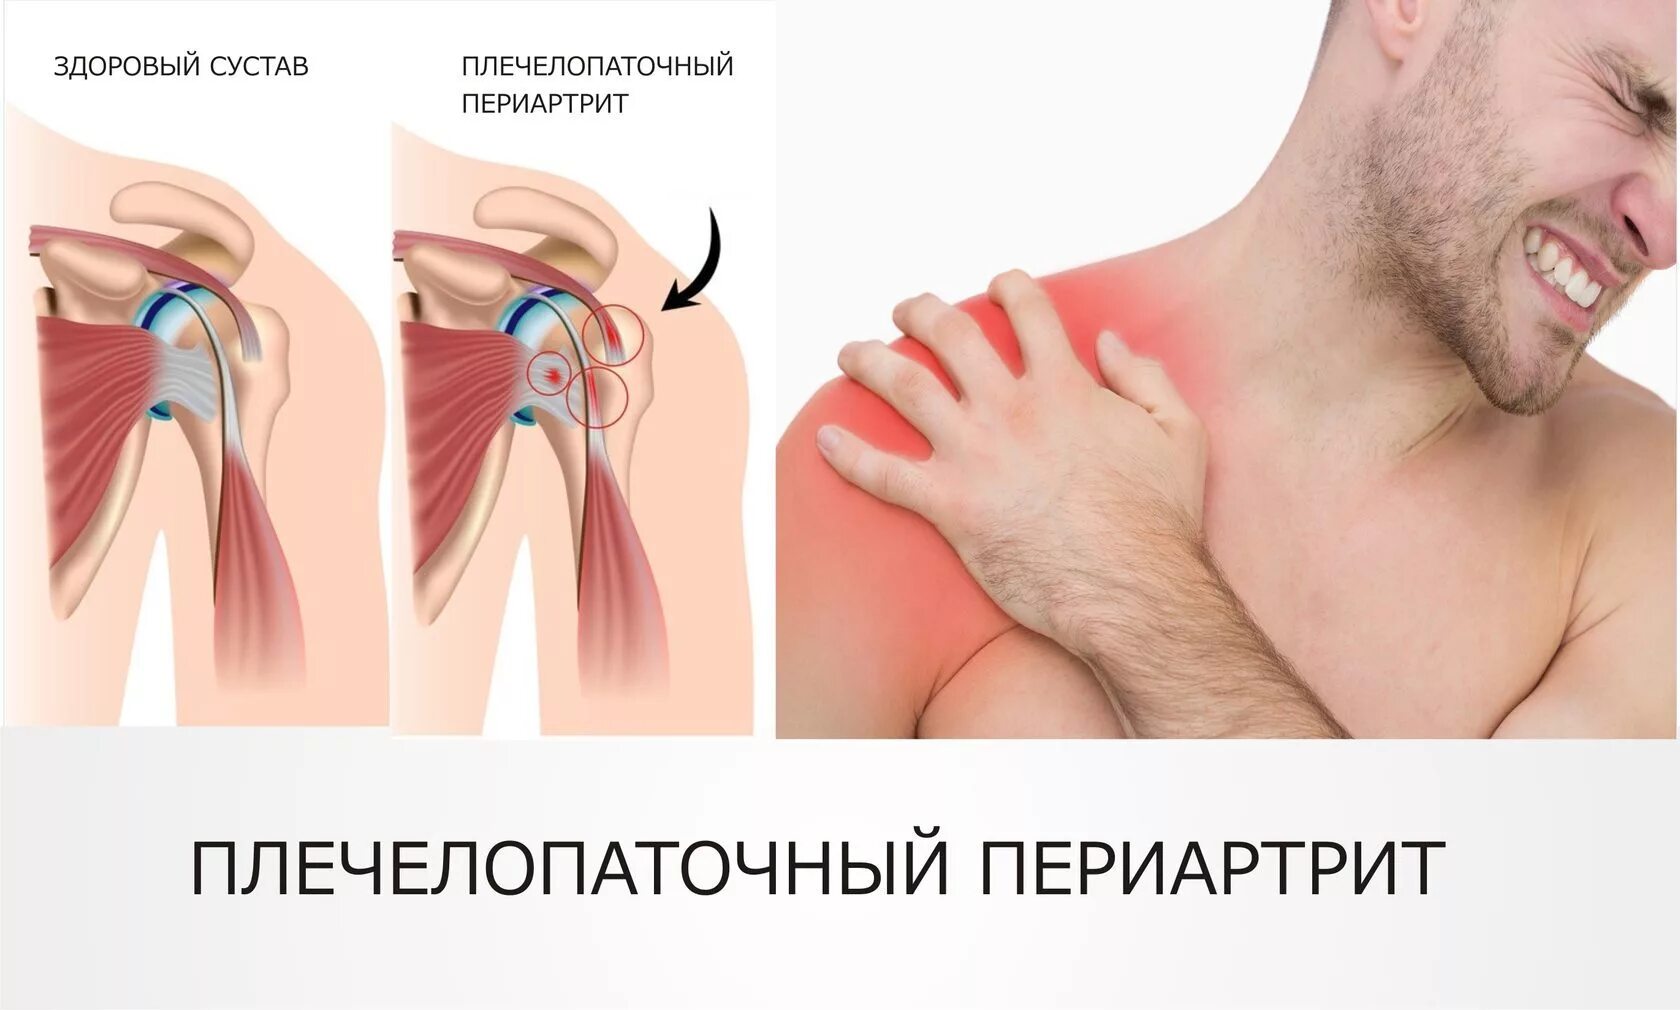 Сильная боль в области плечевого сустава. Синдром плечелопаточный периартрит. Плечевой лопаточный периартроз. Плечелопаточный периартрит периартроз. Плечелопаточный периартрит (плечевой синдром),.